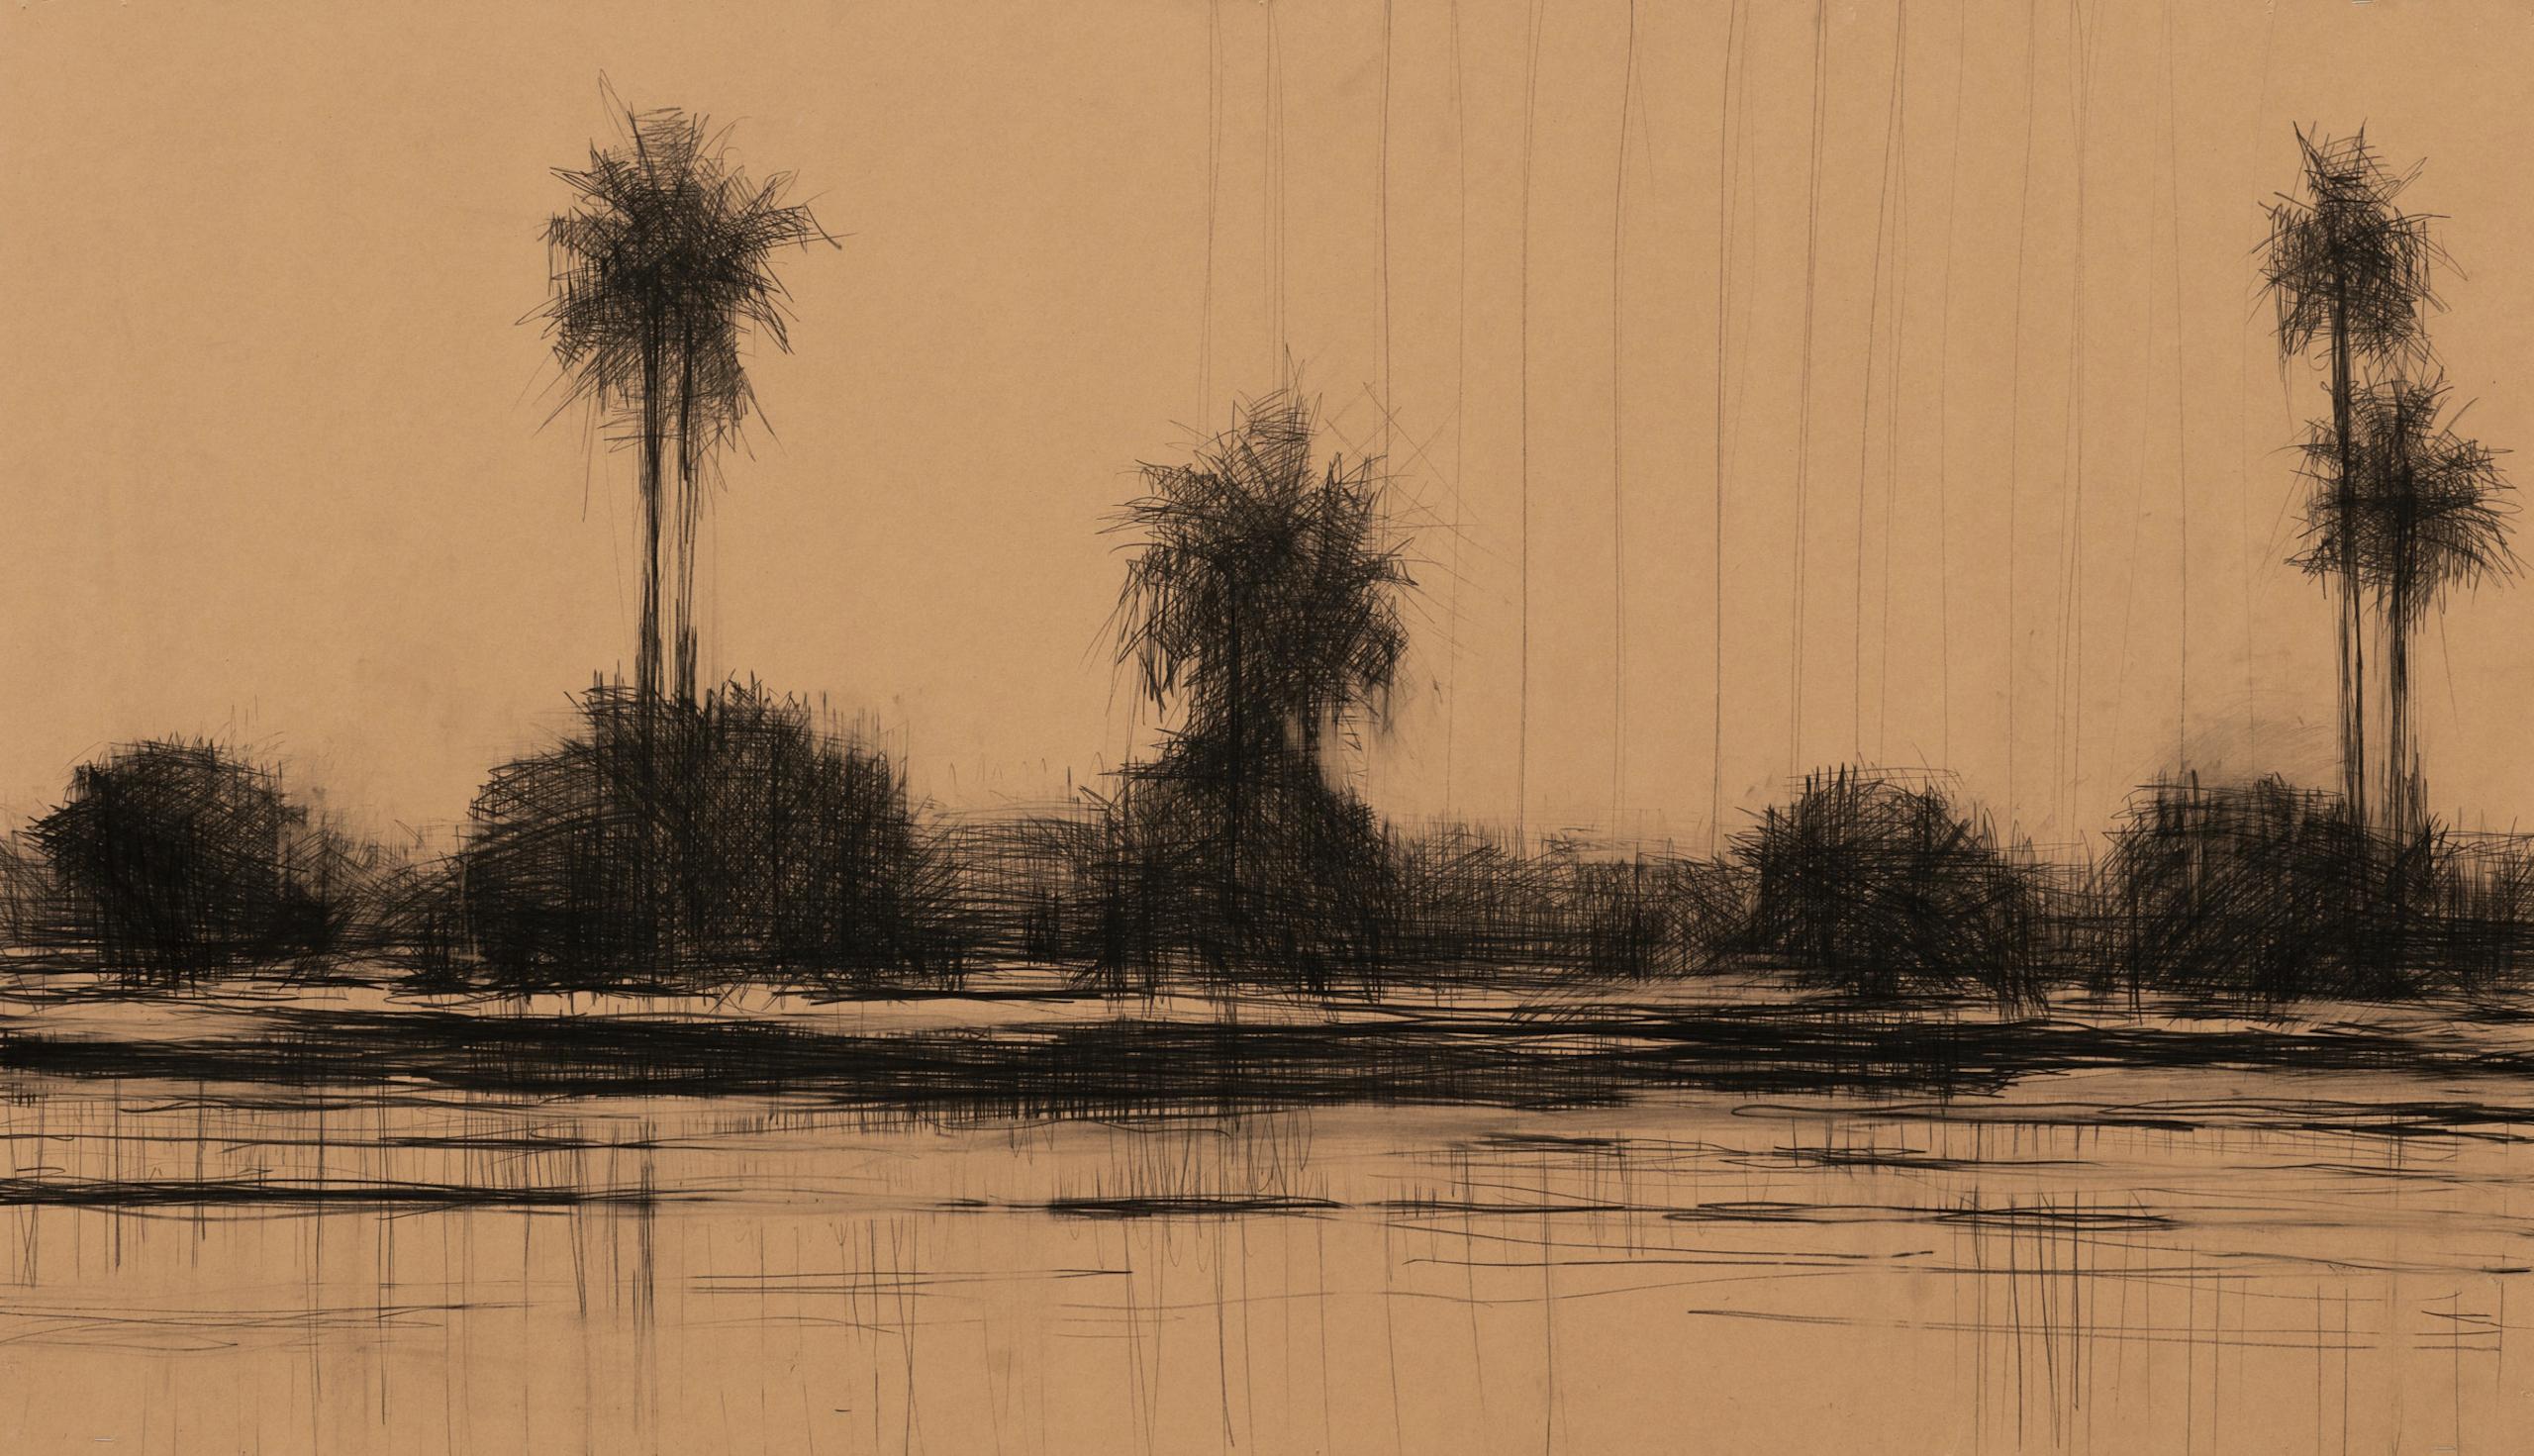 Mangroven in der Casamance Nr.1 von Calo Carratalá - Senegal Landschaftsmalerei